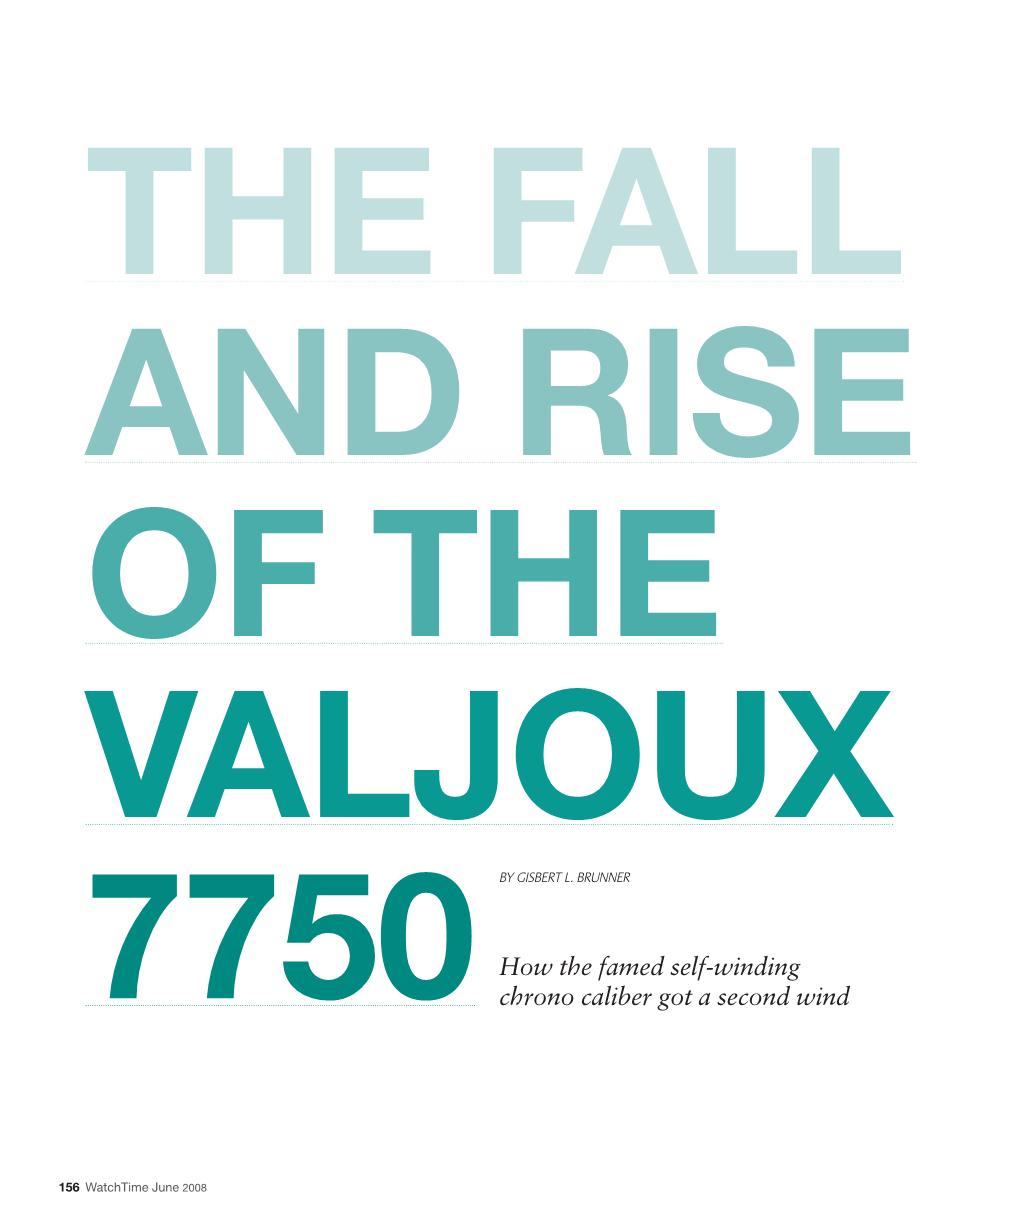 Valjoux 7750